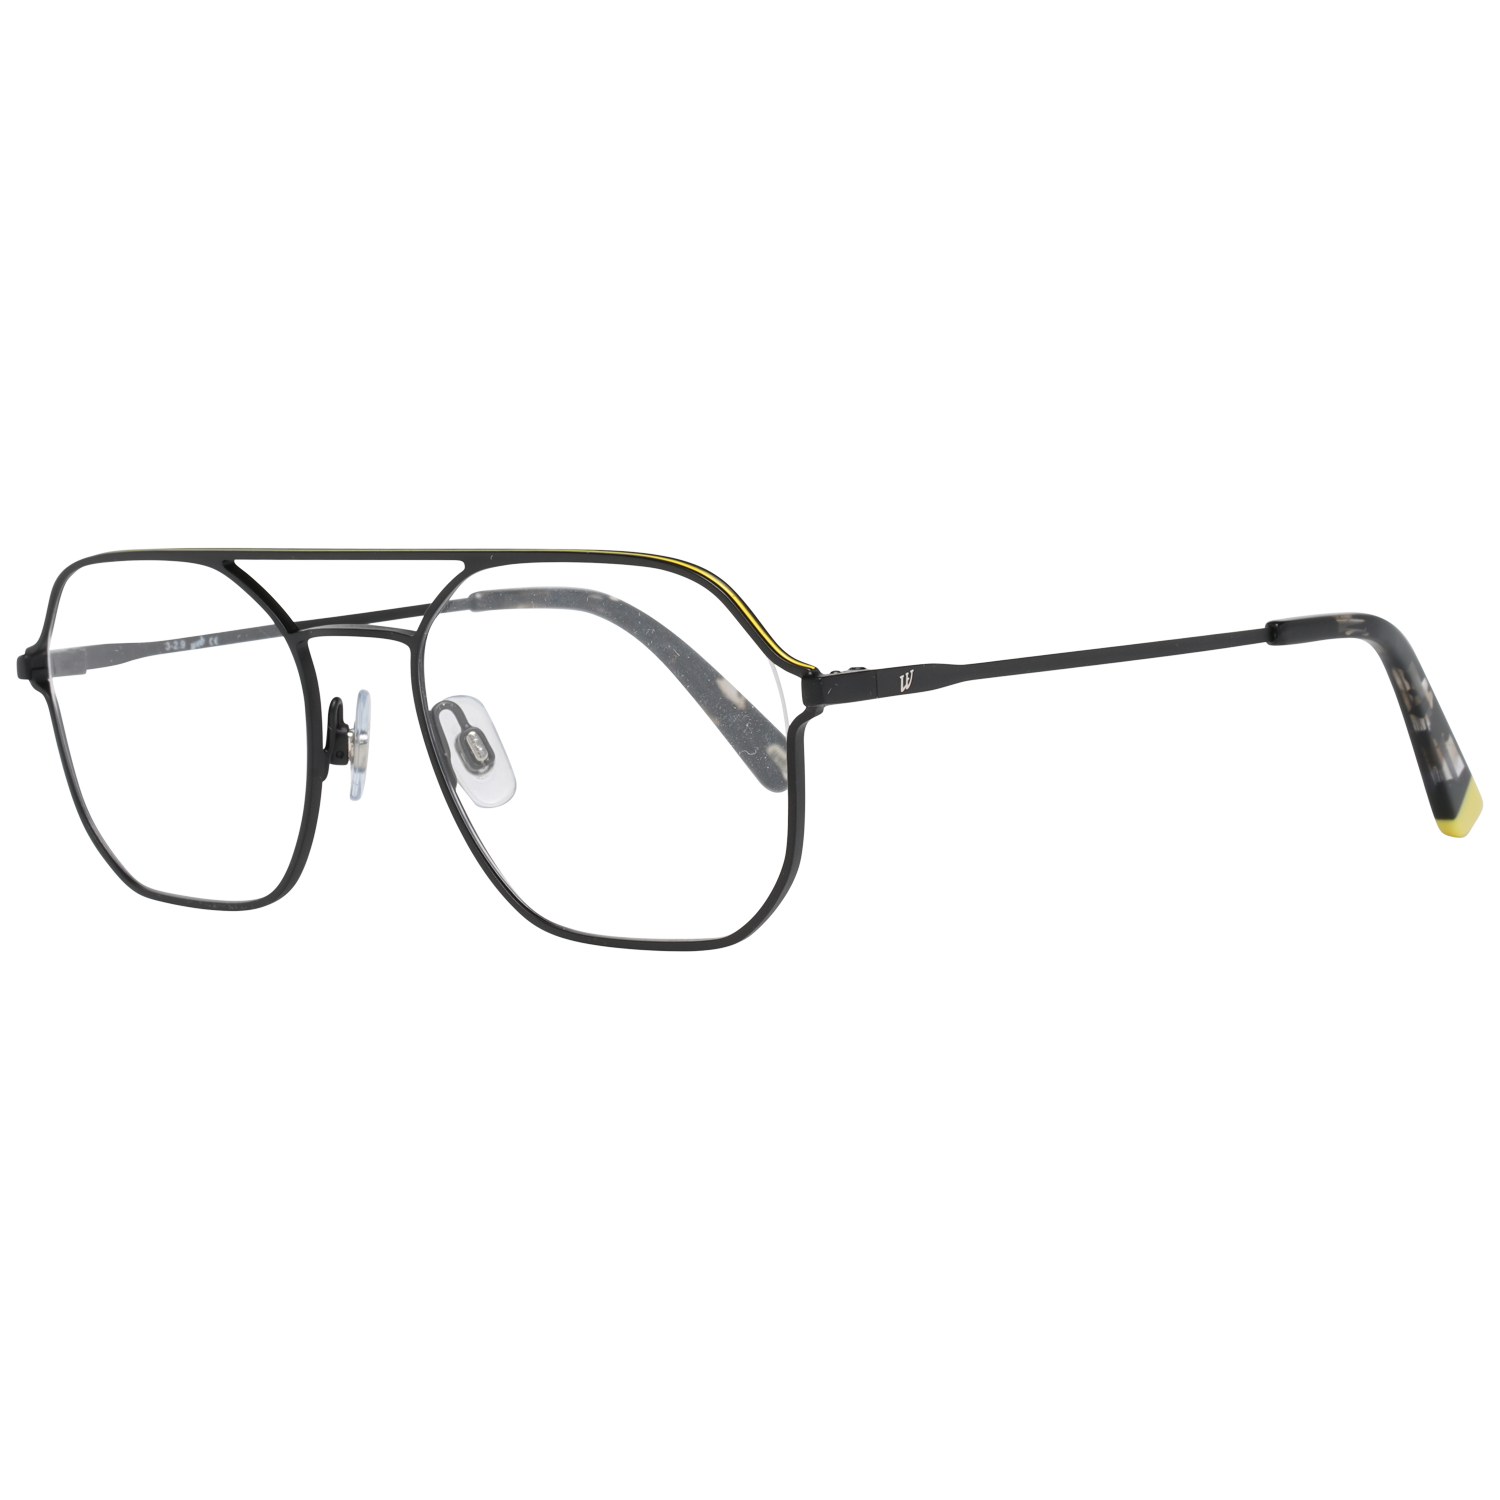 Web Frames Web Optical Frame WE5299 002 53 Eyeglasses Eyewear UK USA Australia 